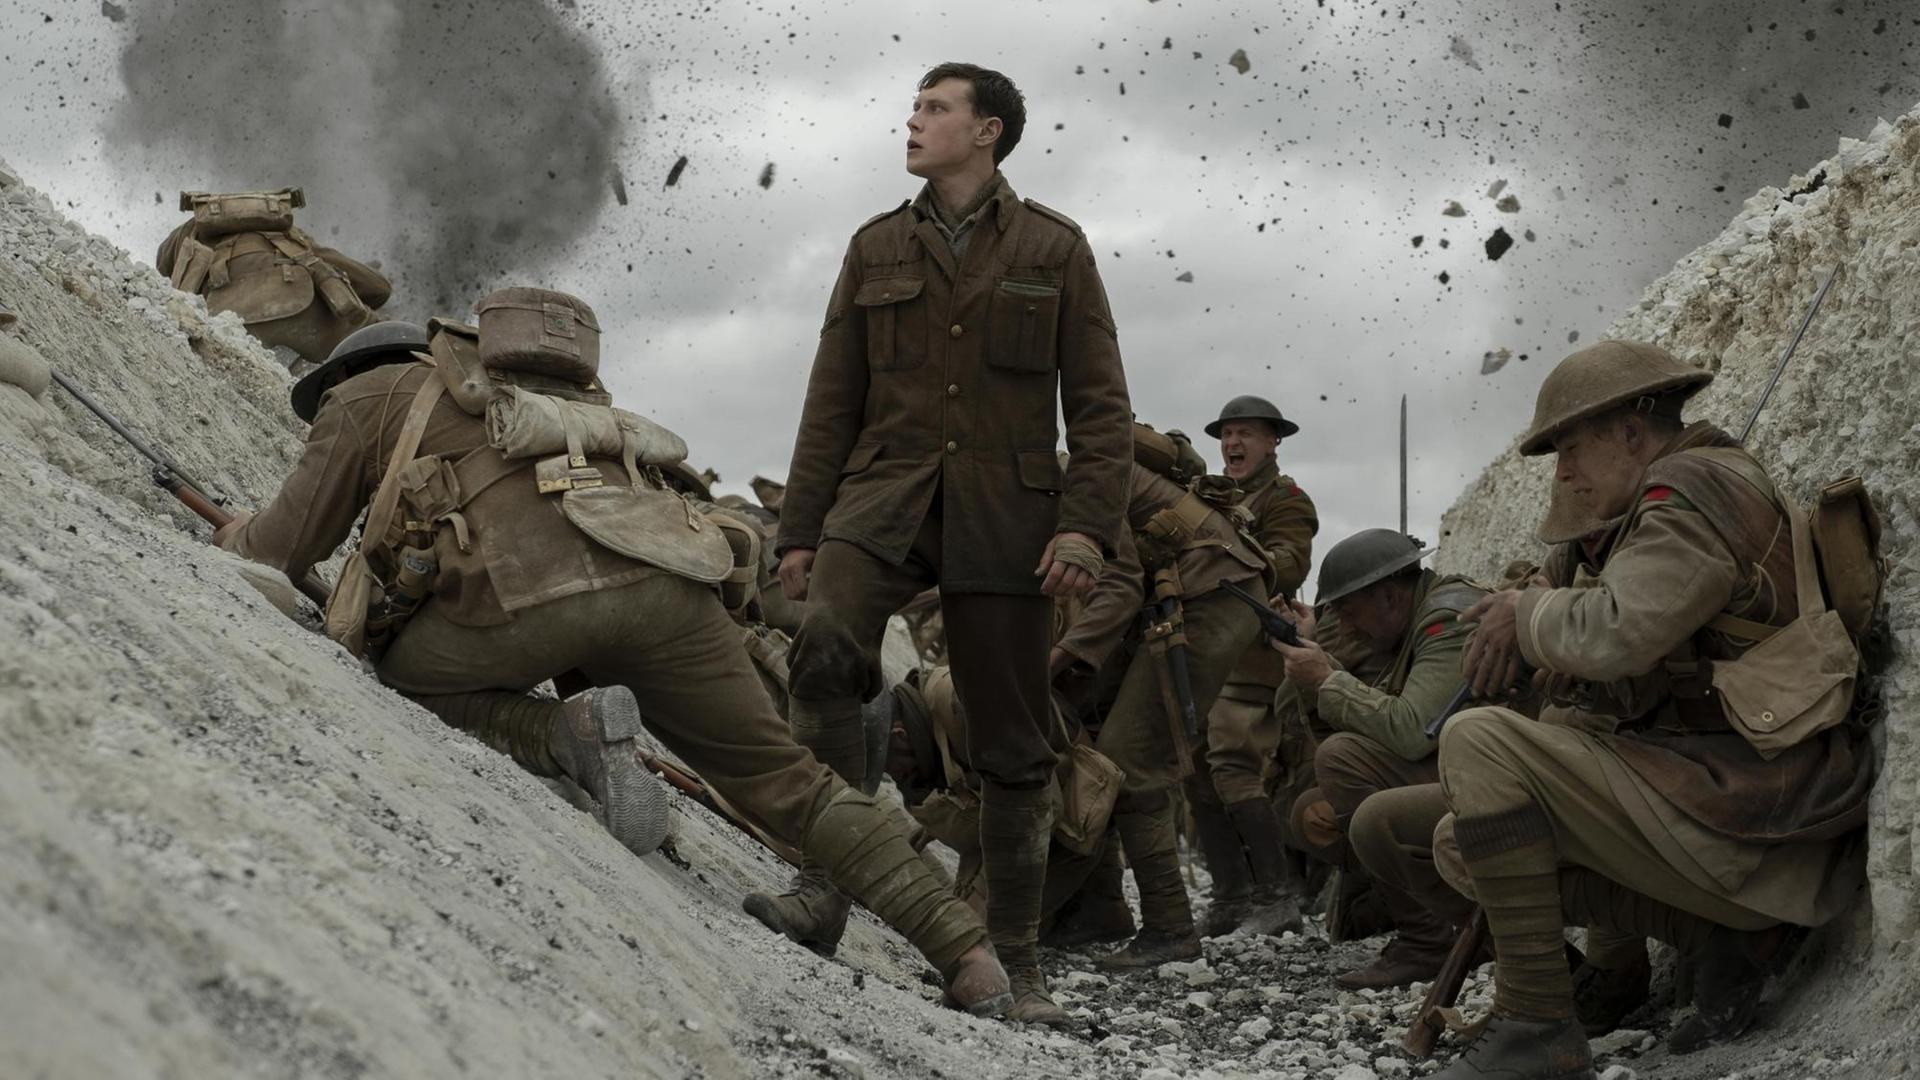 Filmszene aus "1917" von Sam Mendes: George MacKay als Soldat Schofield im Schützengraben, umgeben von anderen Soldaten.